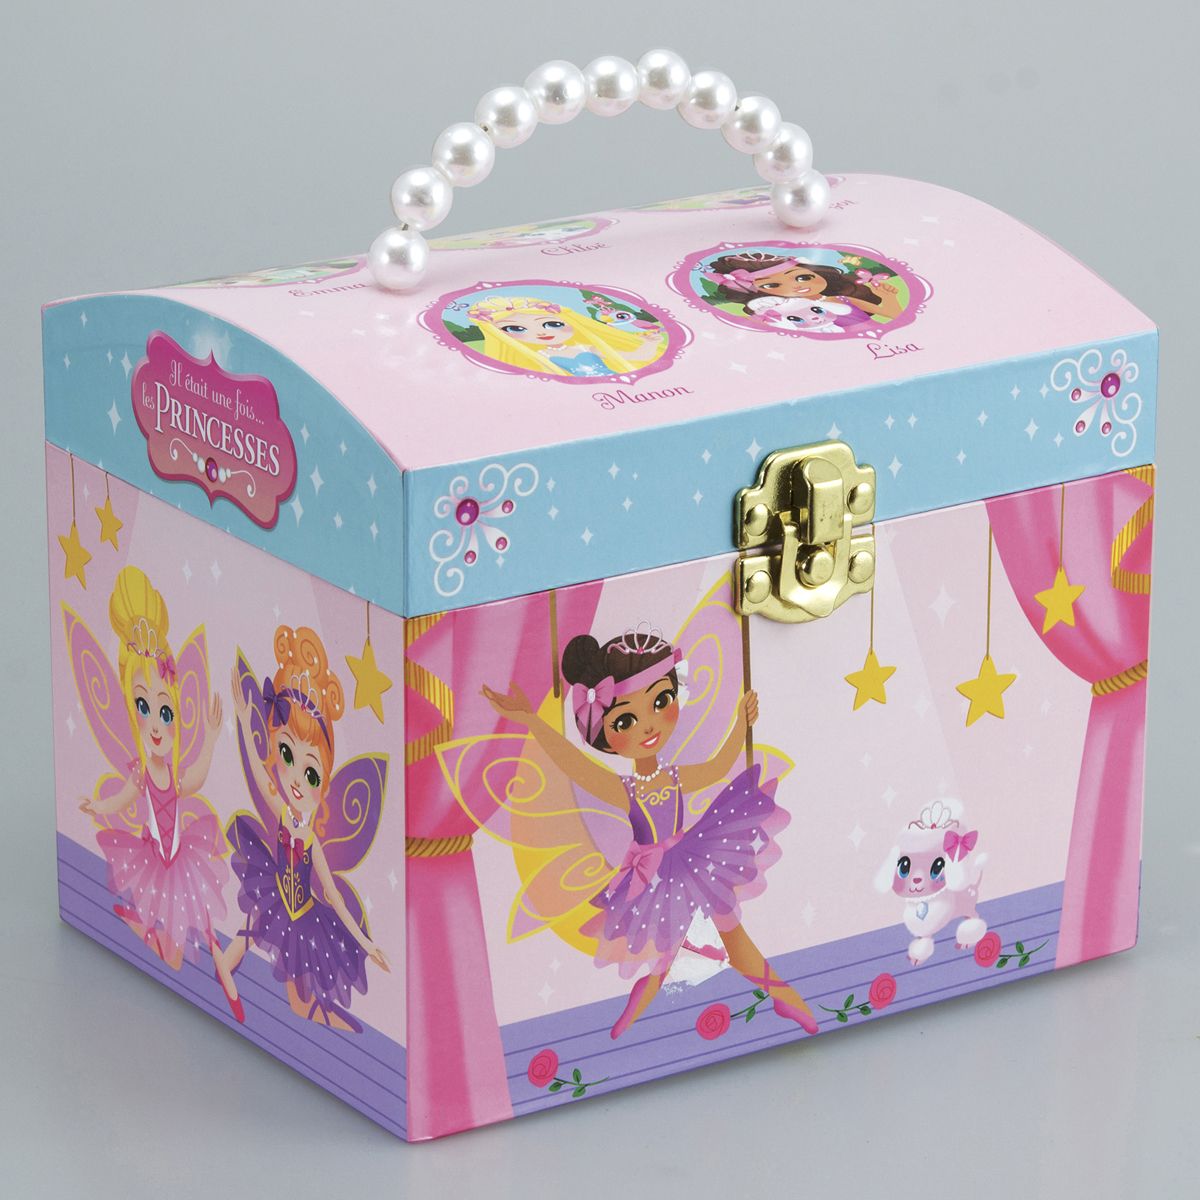 GFCGFGDRG Princesse Danse Musique Boîte à Bijoux boîte de Rangement Cartoon Musical Box Enfants Souvenirs 